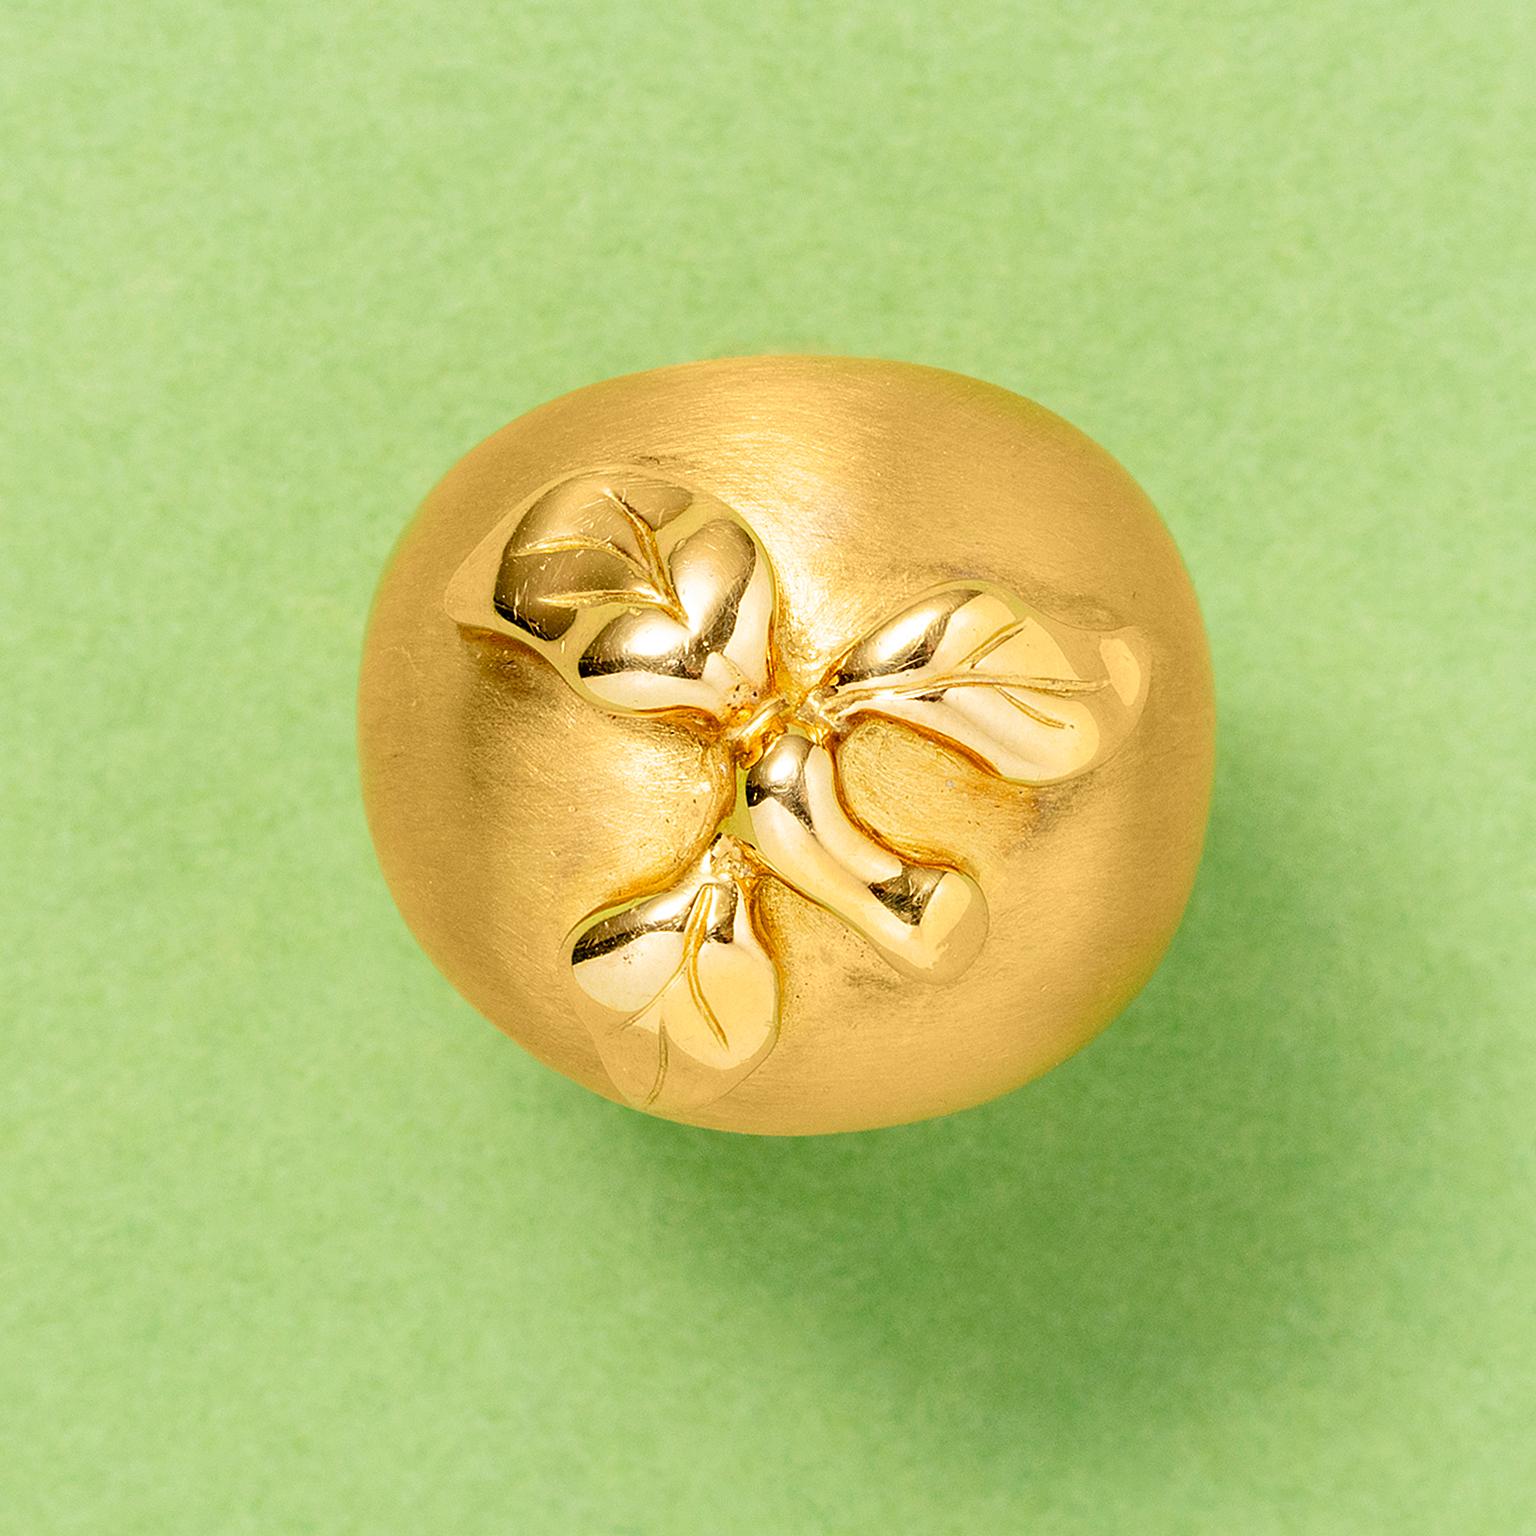 Ring aus 18 Karat Gold in Form eines Apfels mit matter Oberfläche und polierten Blättern und Stielen, Frankreich, mit französischer Prüfmarke und französischer Meistermarke.

Gewicht: 14,6 Gramm 
Ringgröße: 15.75 mm / 5 US passt als 16 - 16+ mm /